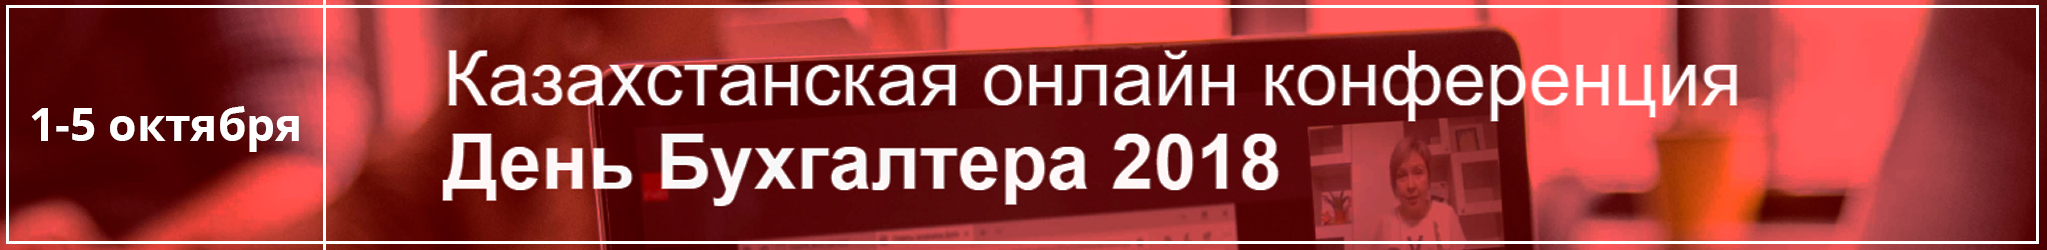 казахстанская онлайн конференция бухгалтеров День бухгалтера 2018